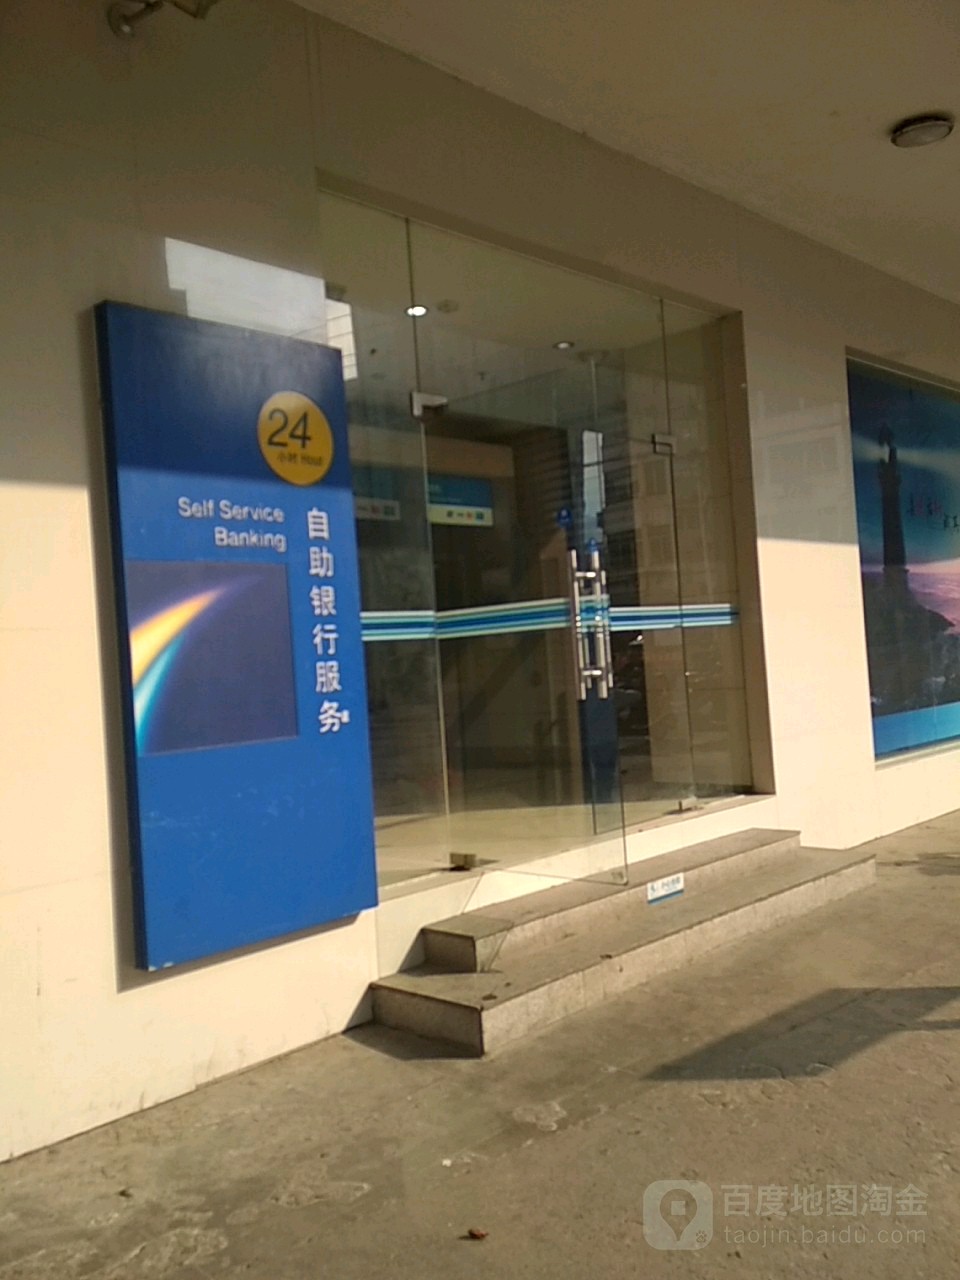 中國農業銀行24小時自助銀行服務(連州市支行)